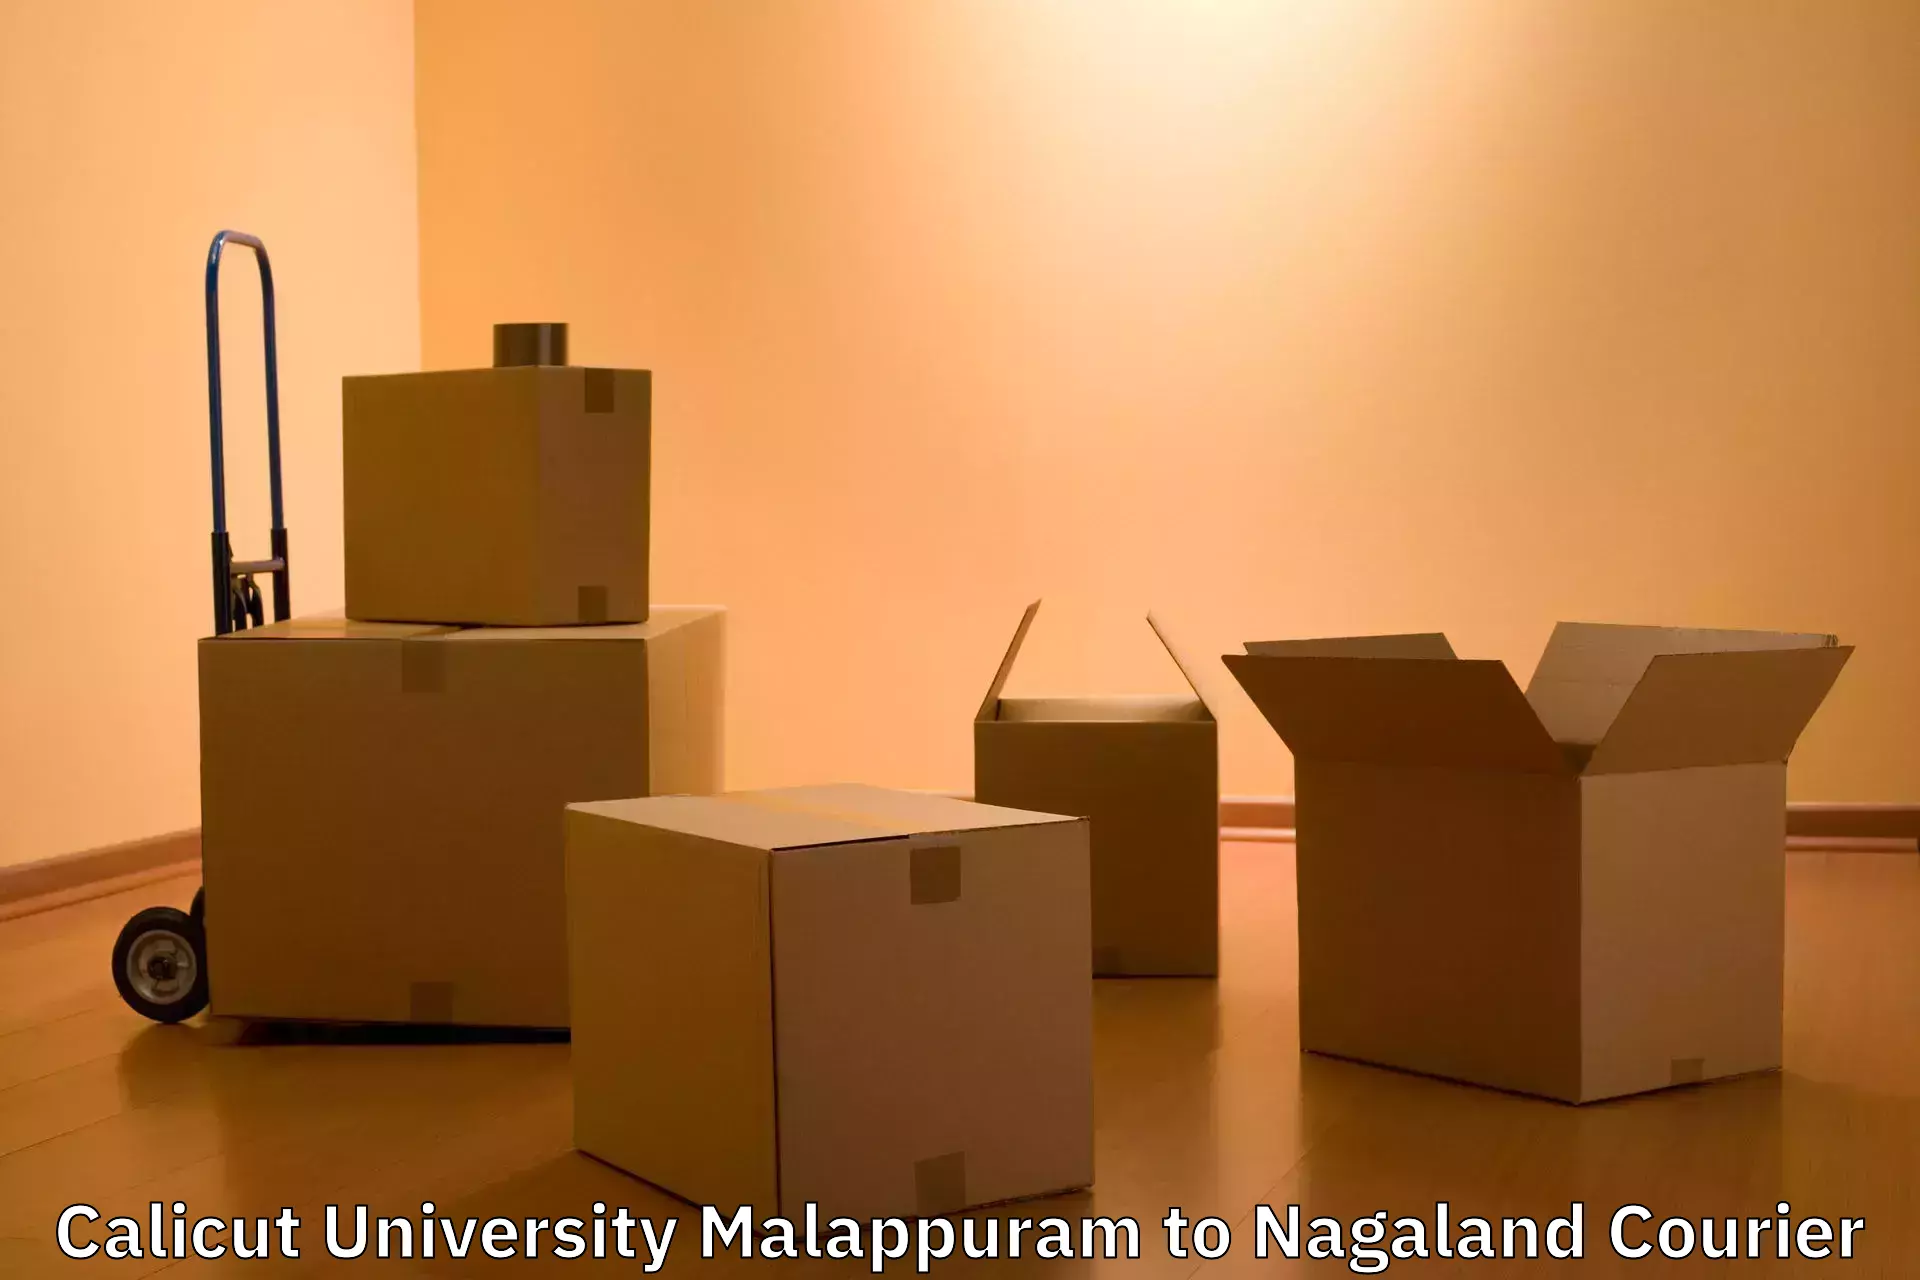 Luggage forwarding service Calicut University Malappuram to NIT Nagaland